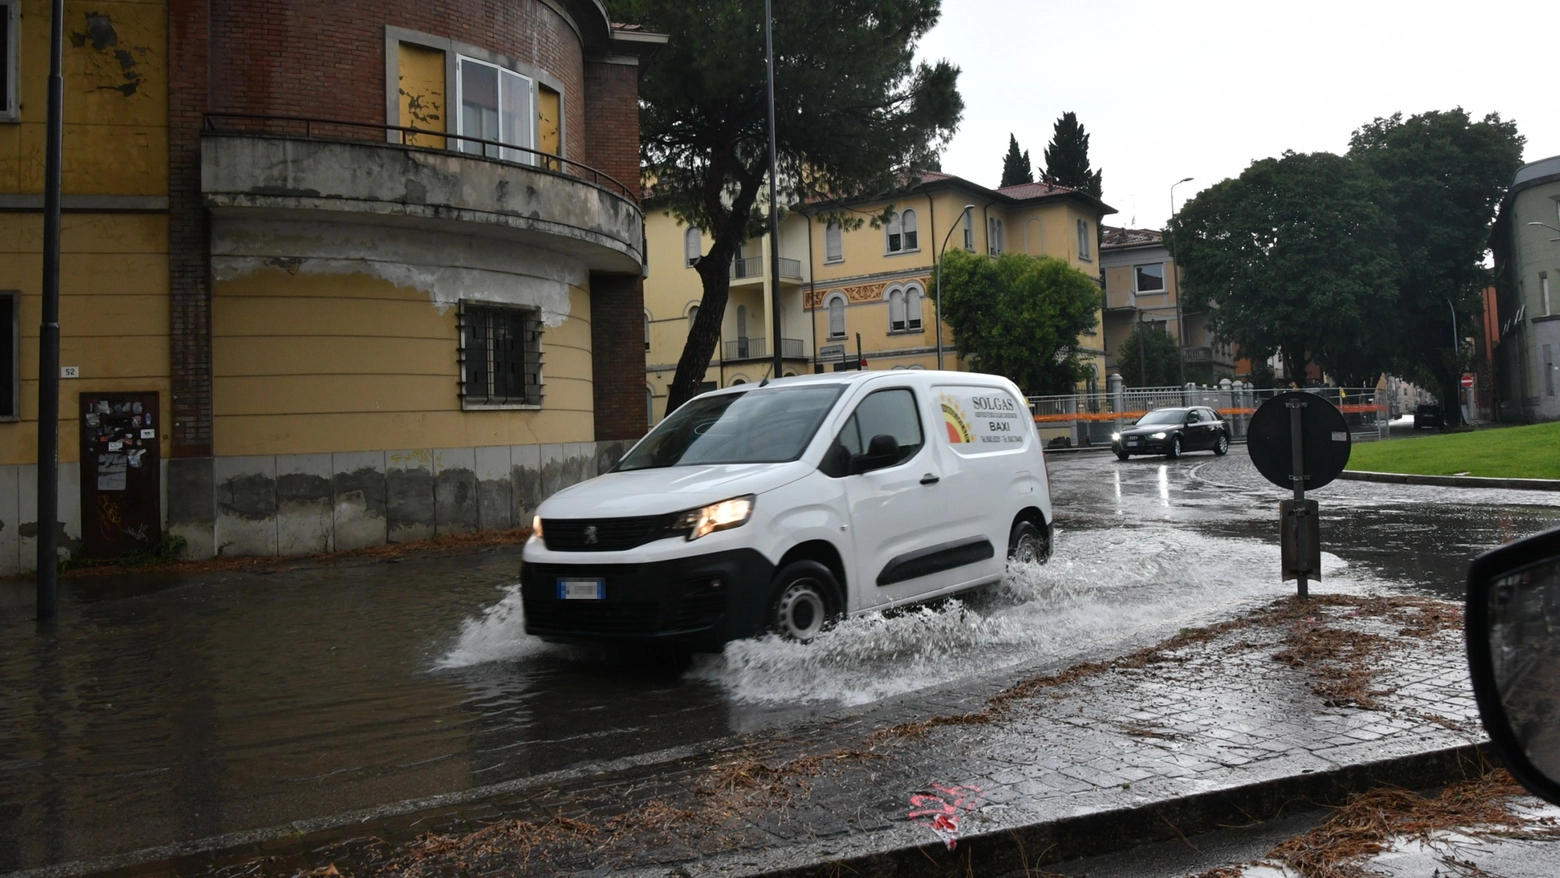 Strade come fiumi a Forlì dopo il nubifragio con grandine dell'altro giorno